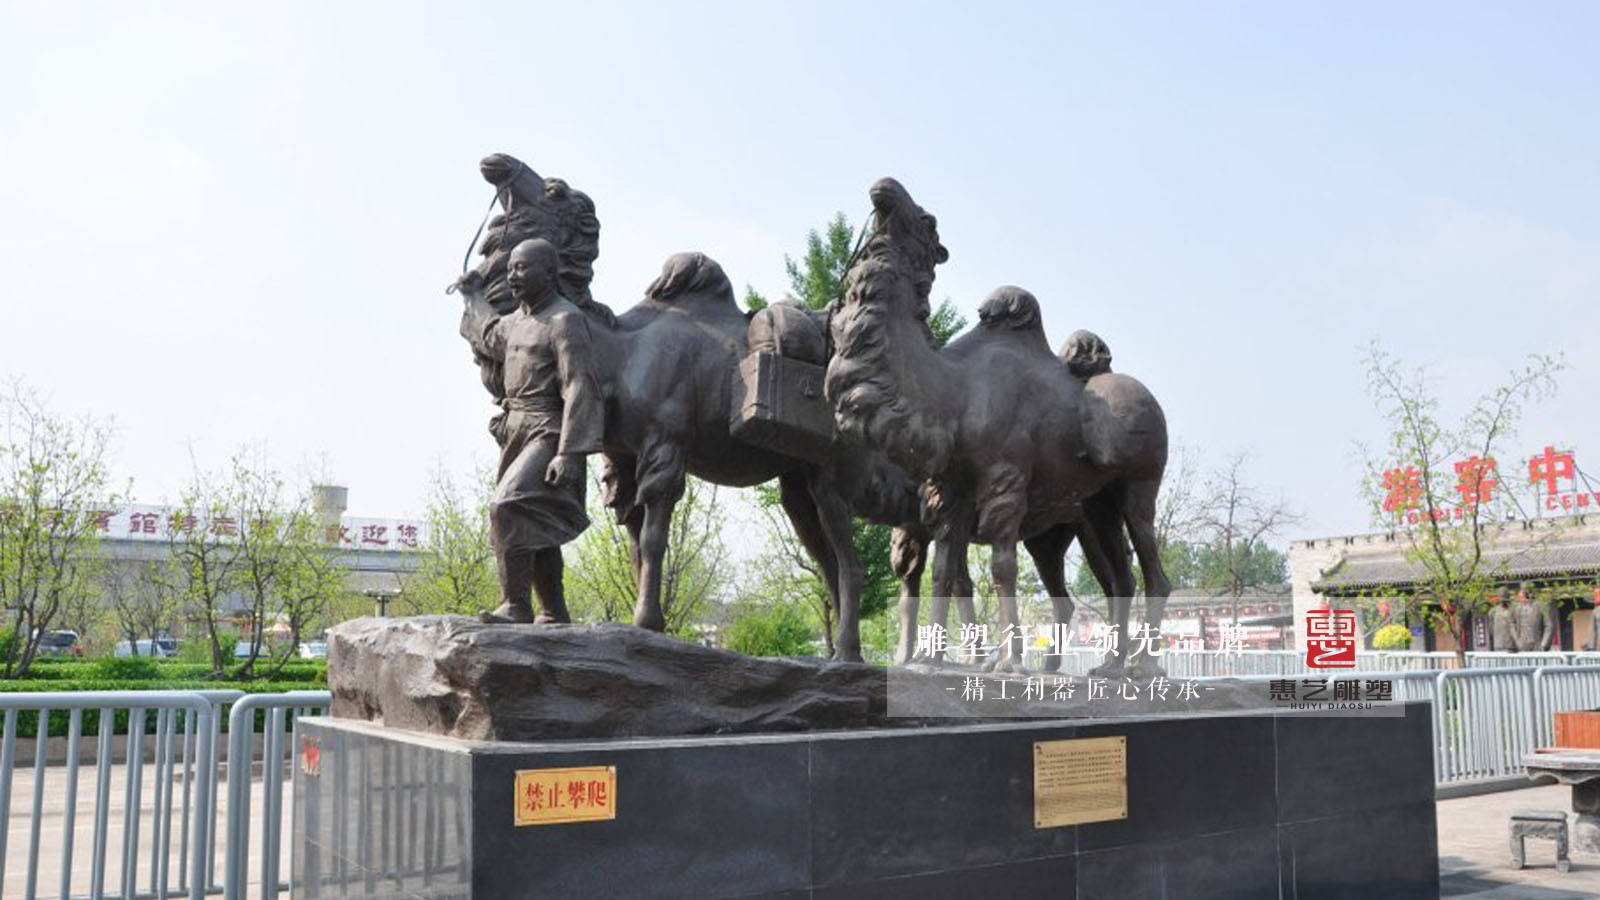 丝绸之路——中华五千年文化传承,丝绸之路的历史价值